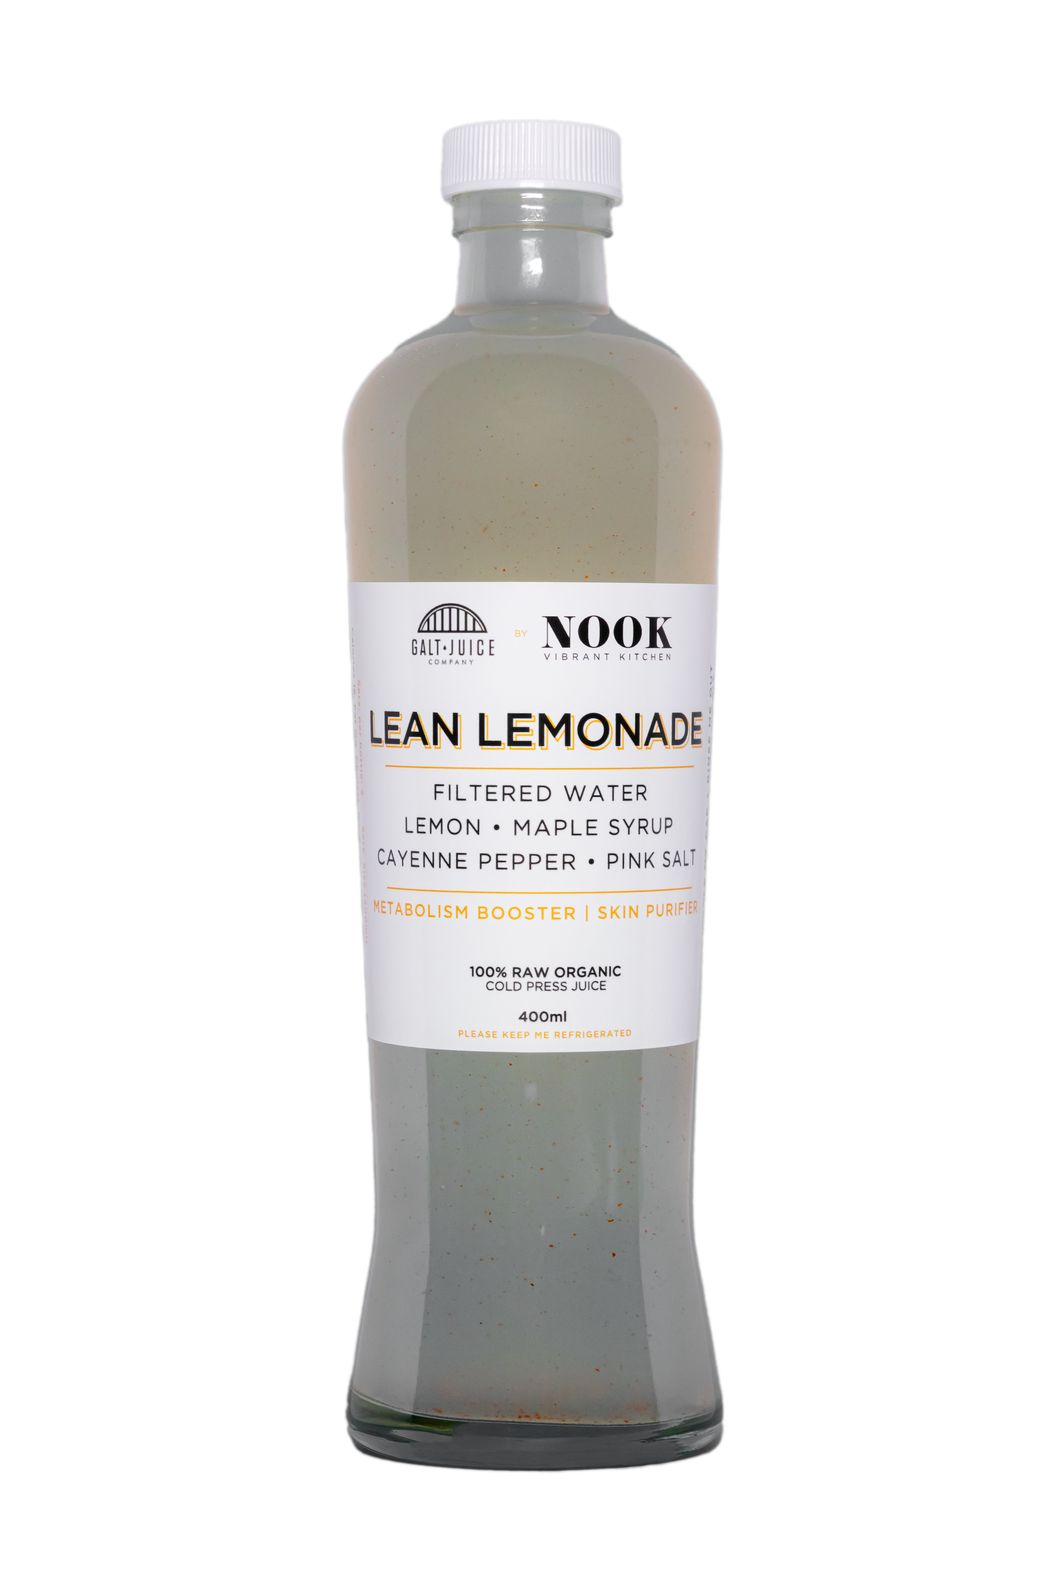 Lean Lemonade